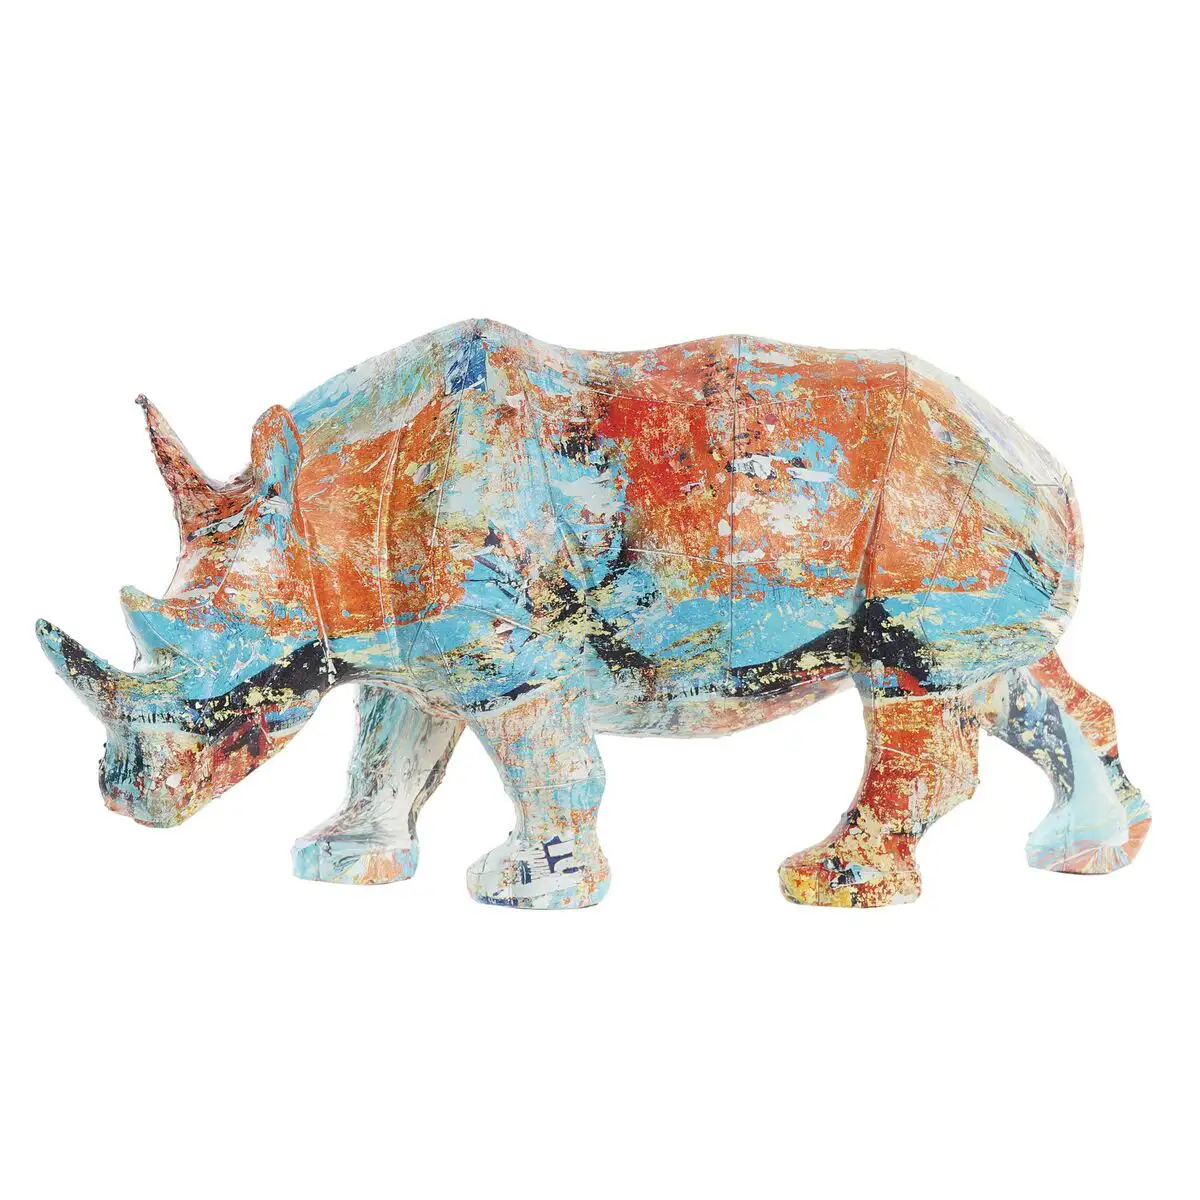 Figurine decorative dkd home decor 34 x 12 5 x 16 5 cm multicouleur rhinoceros moderne_4570. Bienvenue chez DIAYTAR SENEGAL - Où le Shopping Devient un Plaisir. Découvrez notre boutique en ligne et trouvez des trésors qui égaieront chaque jour de votre vie.